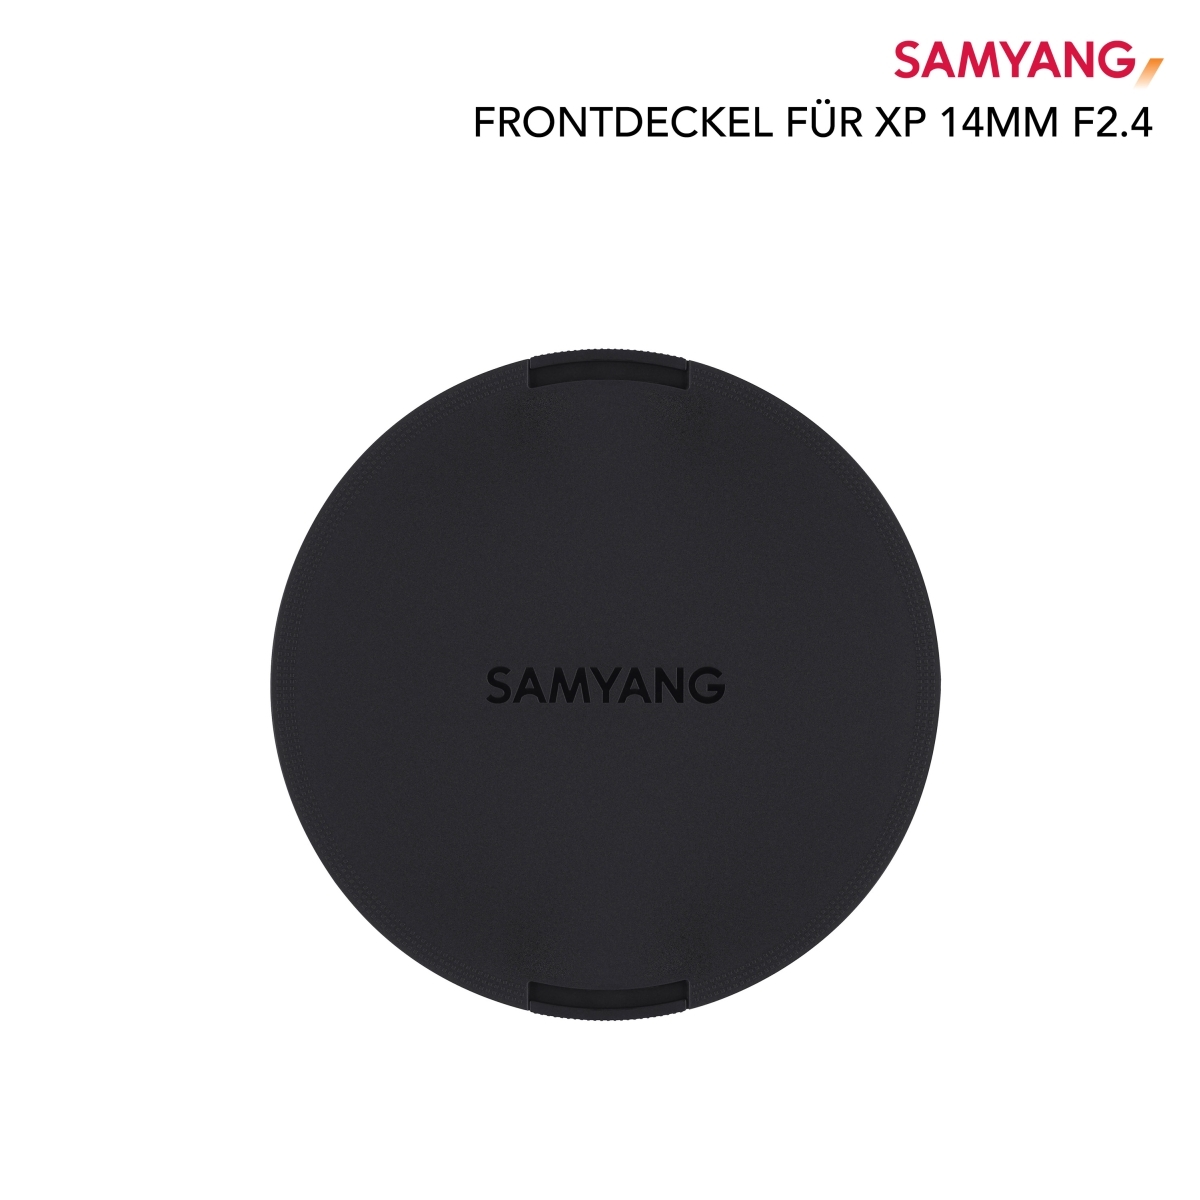 Samyang voorzetkap voor XP 14mm F2.4